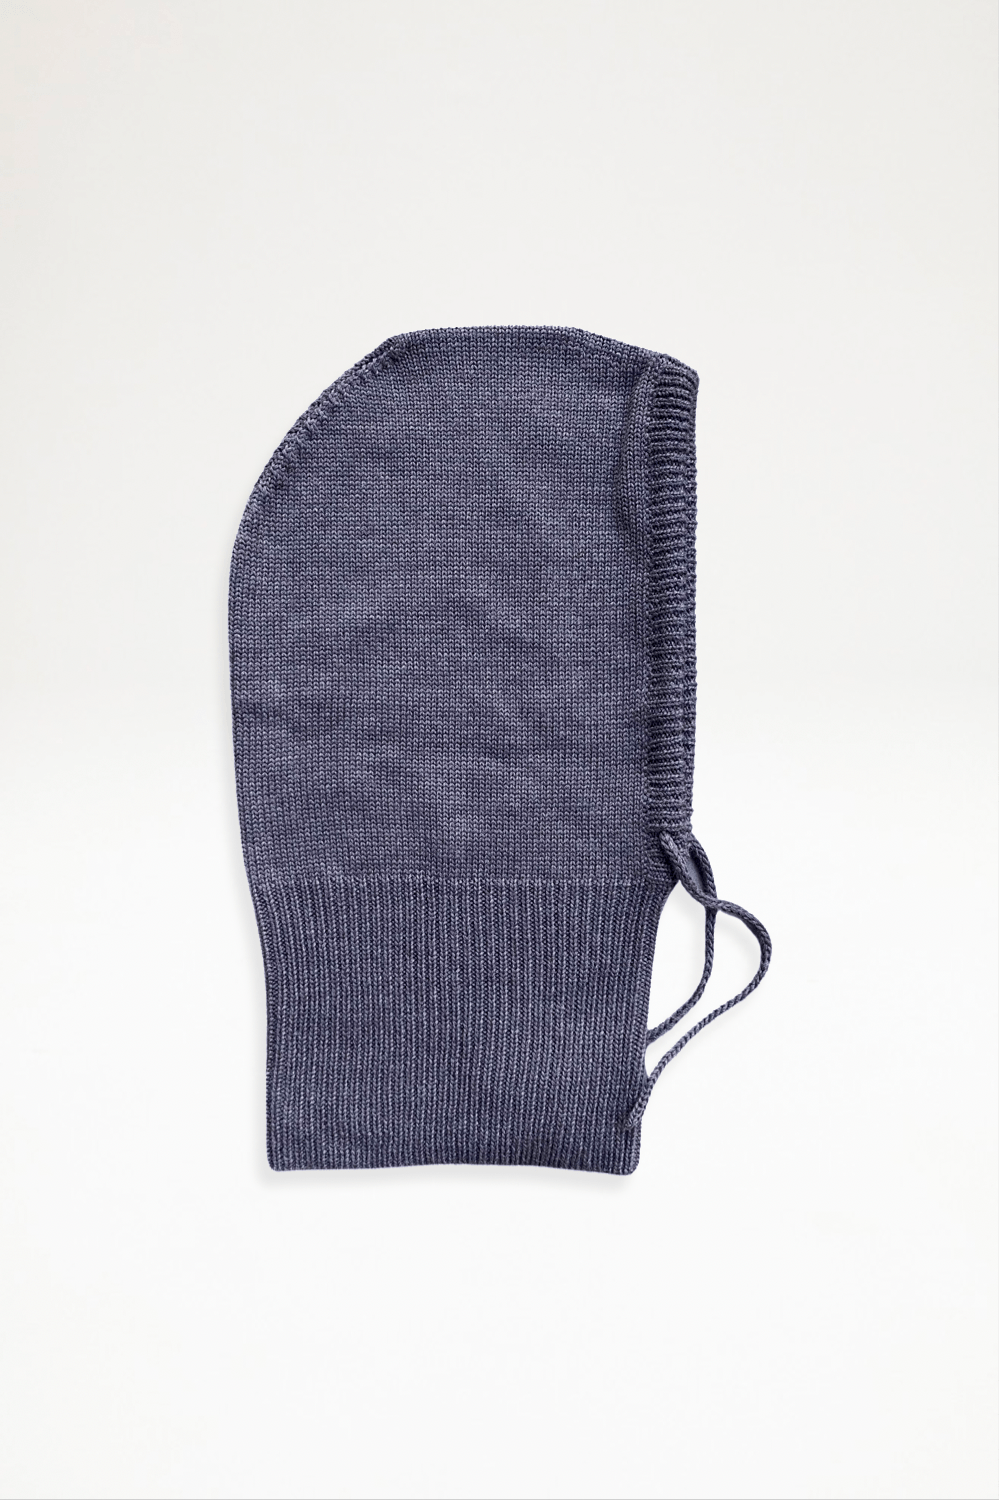 Tulip Knit Atelier - Merino Knitted Hoods - Bark - Ensemble Studios